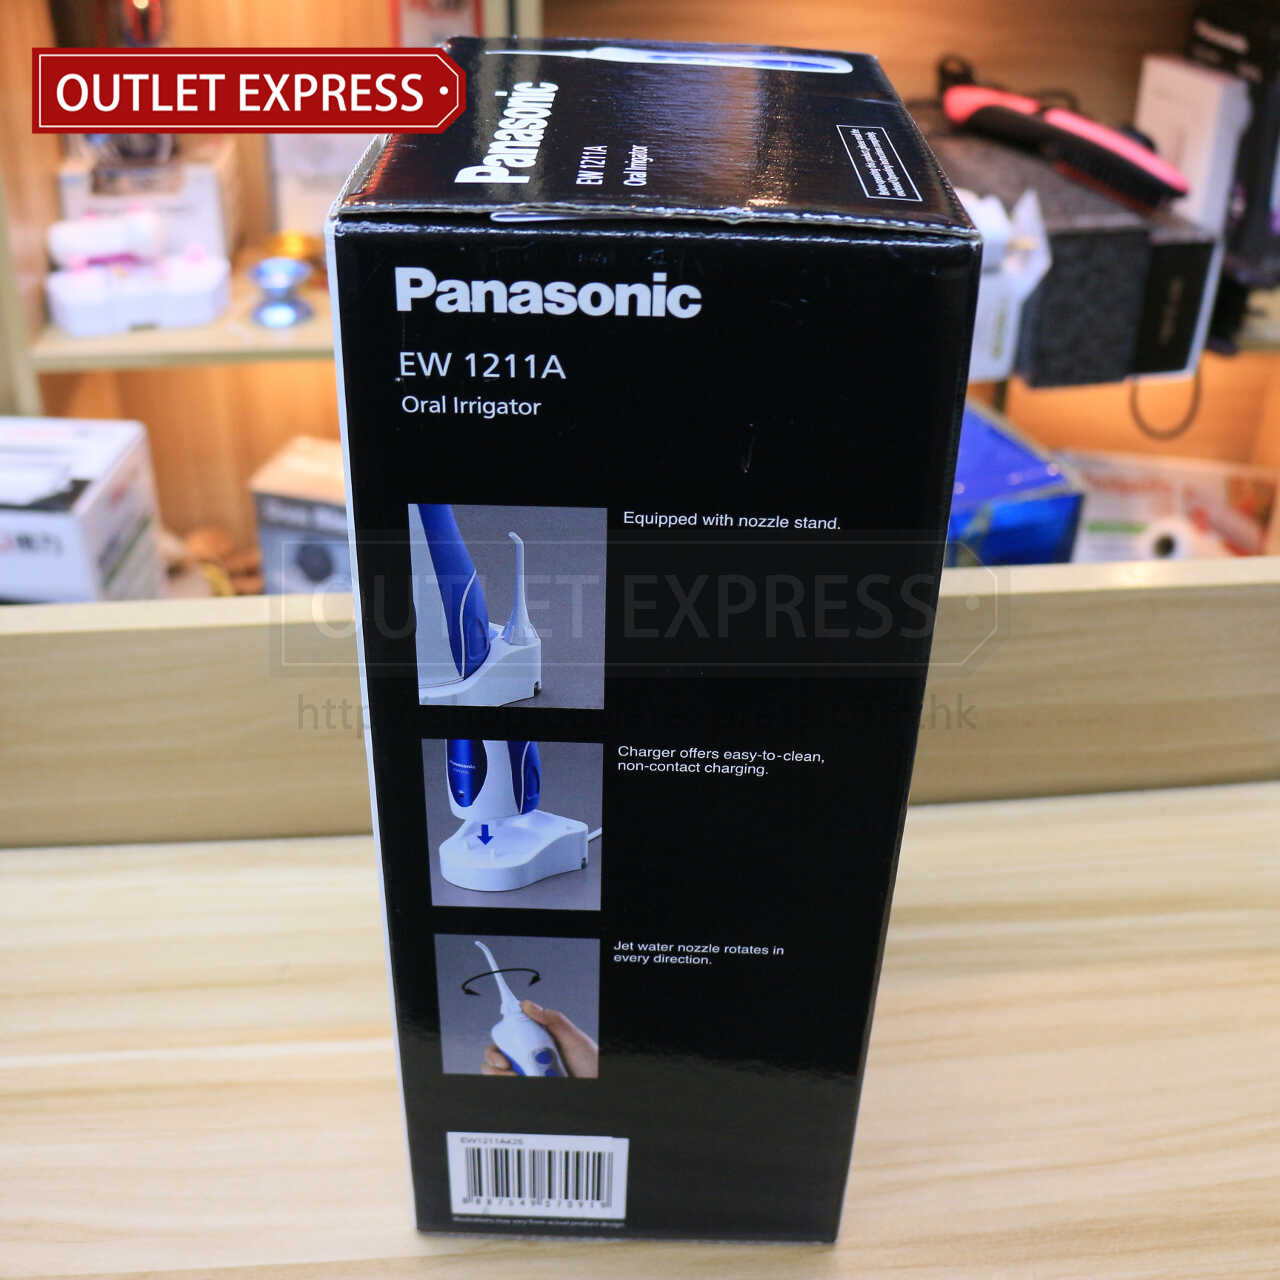 Panasonic EW1211A 可充電水沖式牙線 水牙線 洗牙機 側面- Outlet Express HK生活百貨城實拍相片